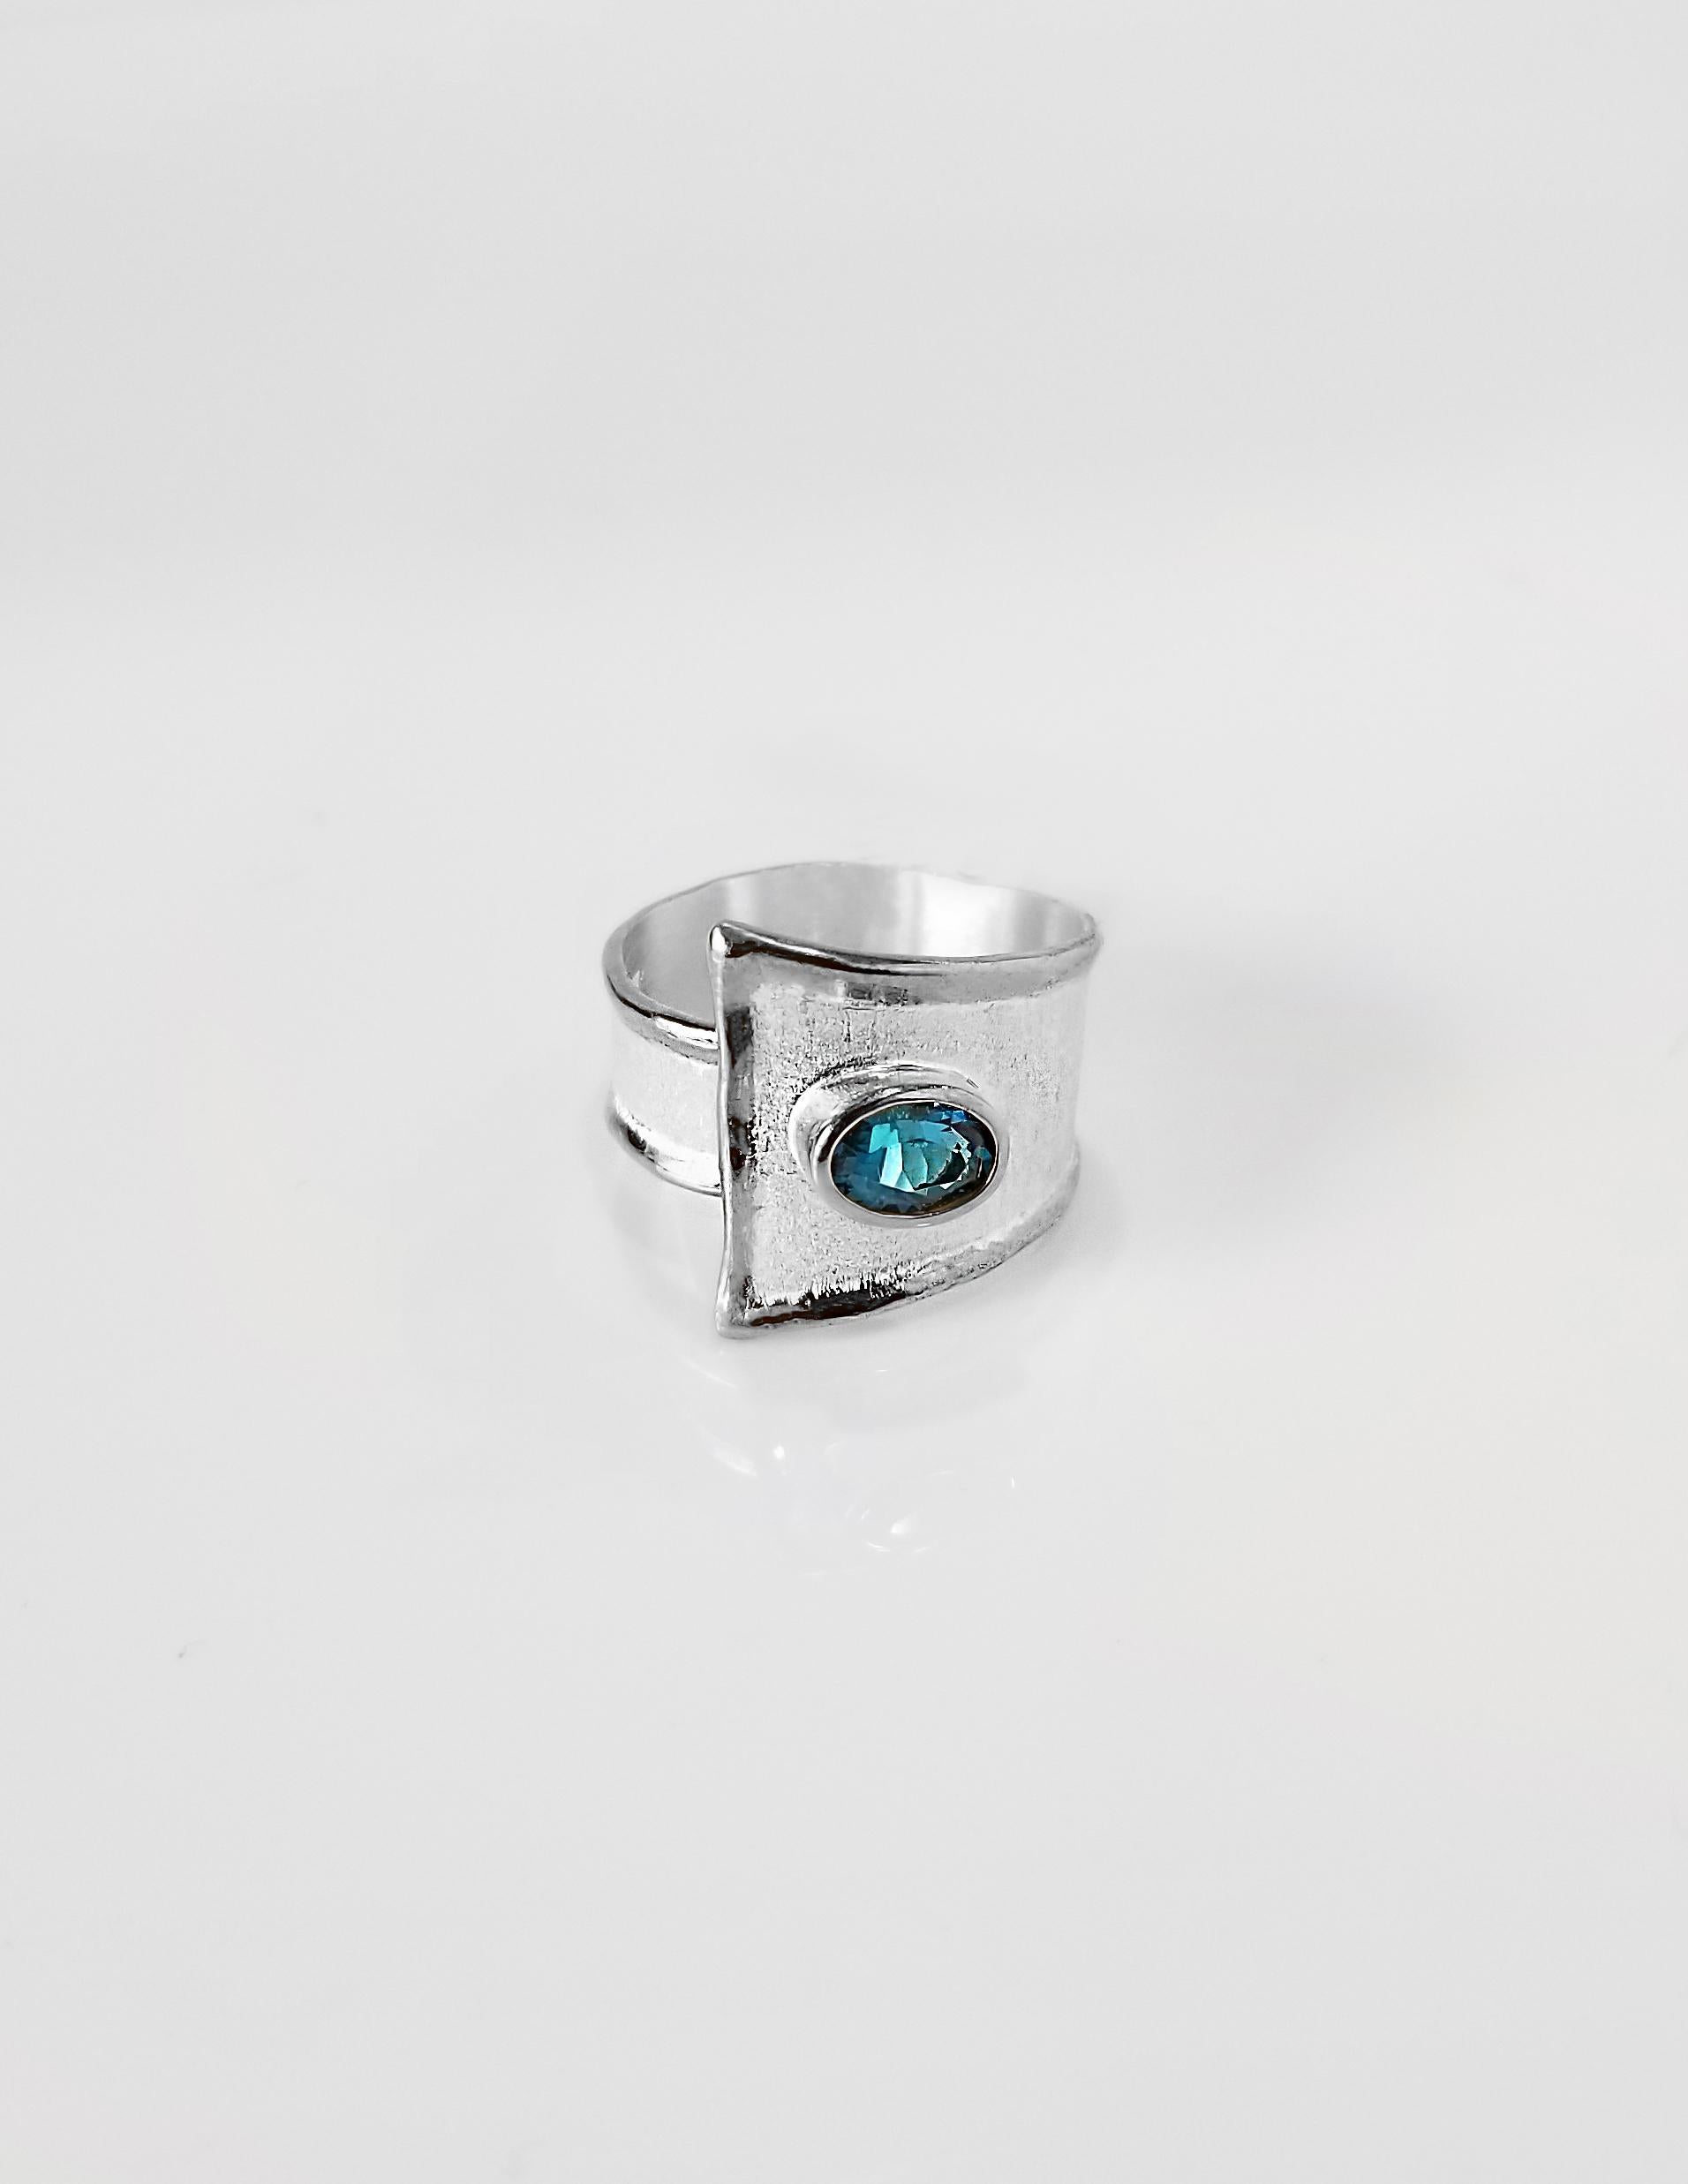 Yianni Designer Fine Silver 100% Handmade Artisan Adjustable Band Ring ist für die Ammos Collection gemacht und verfügt über einen 1,60 Karat London Blue Topaz. Der wunderschöne Designerring wird durch eine einzigartige Handwerkstechnik ergänzt -